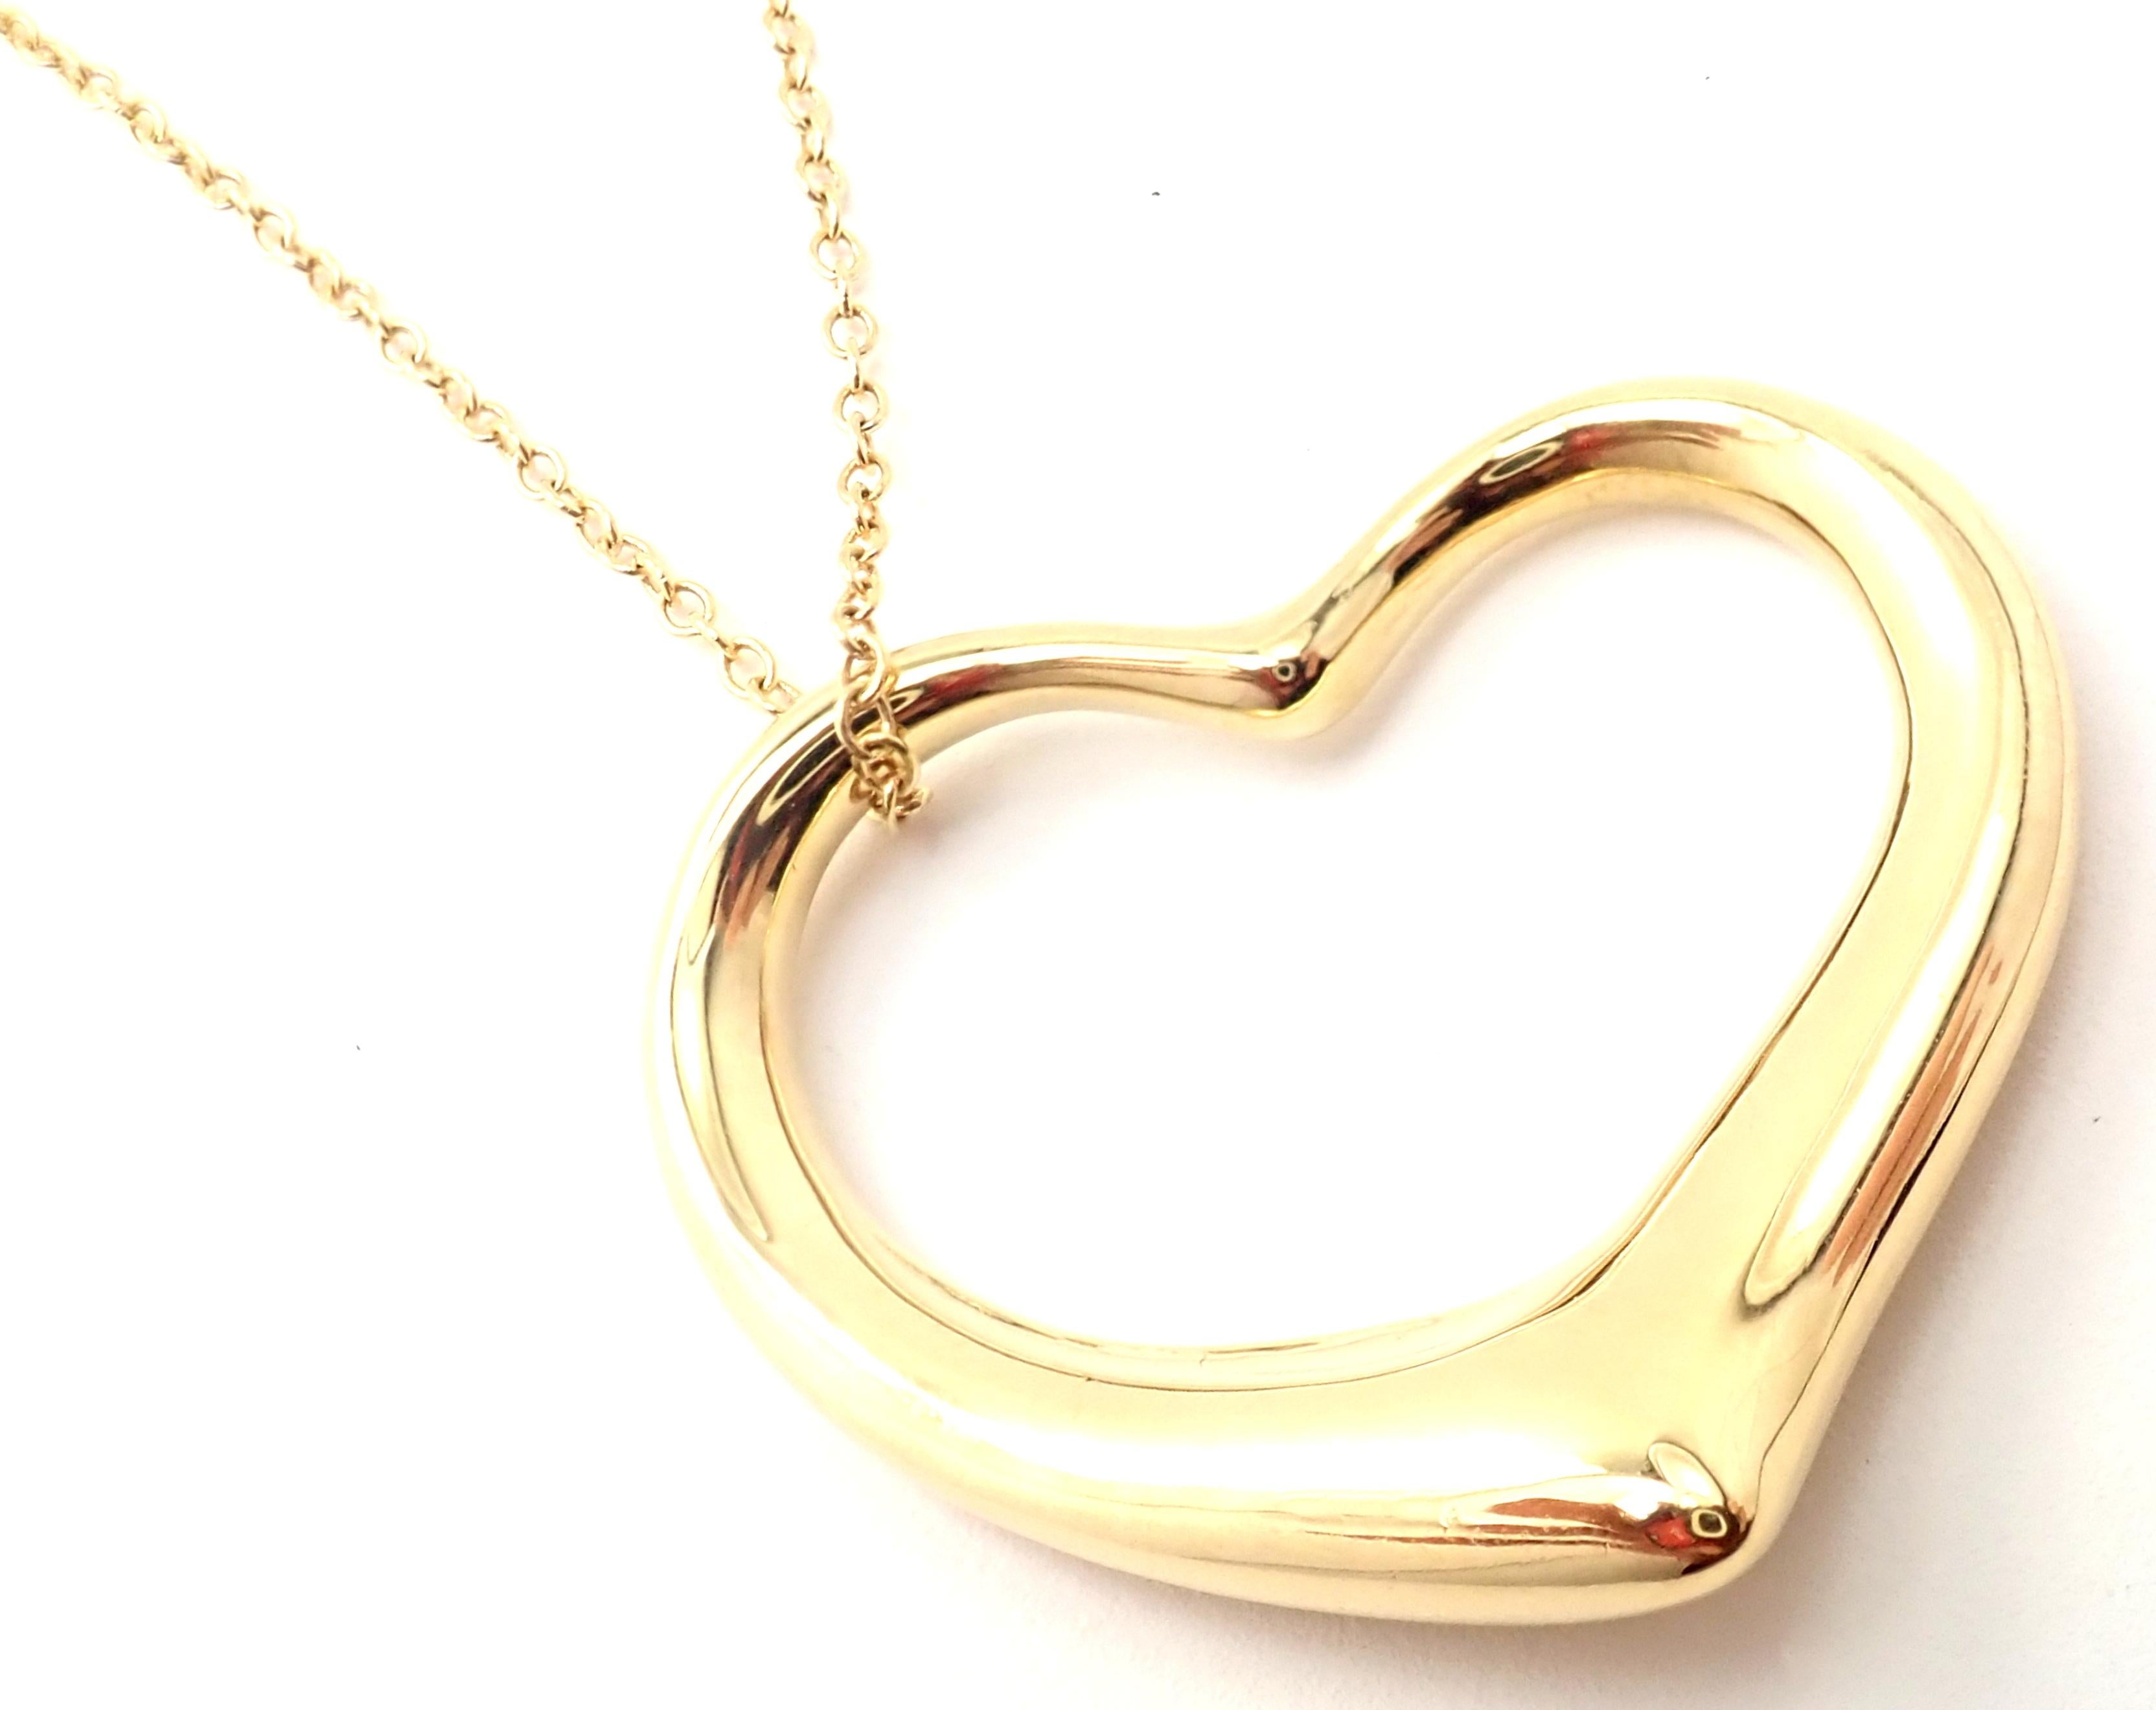 18k Gelbgold Großer offener Herzanhänger Halskette von Elsa Peretti für Tiffany & Co.
Einzelheiten:
Länge: 30